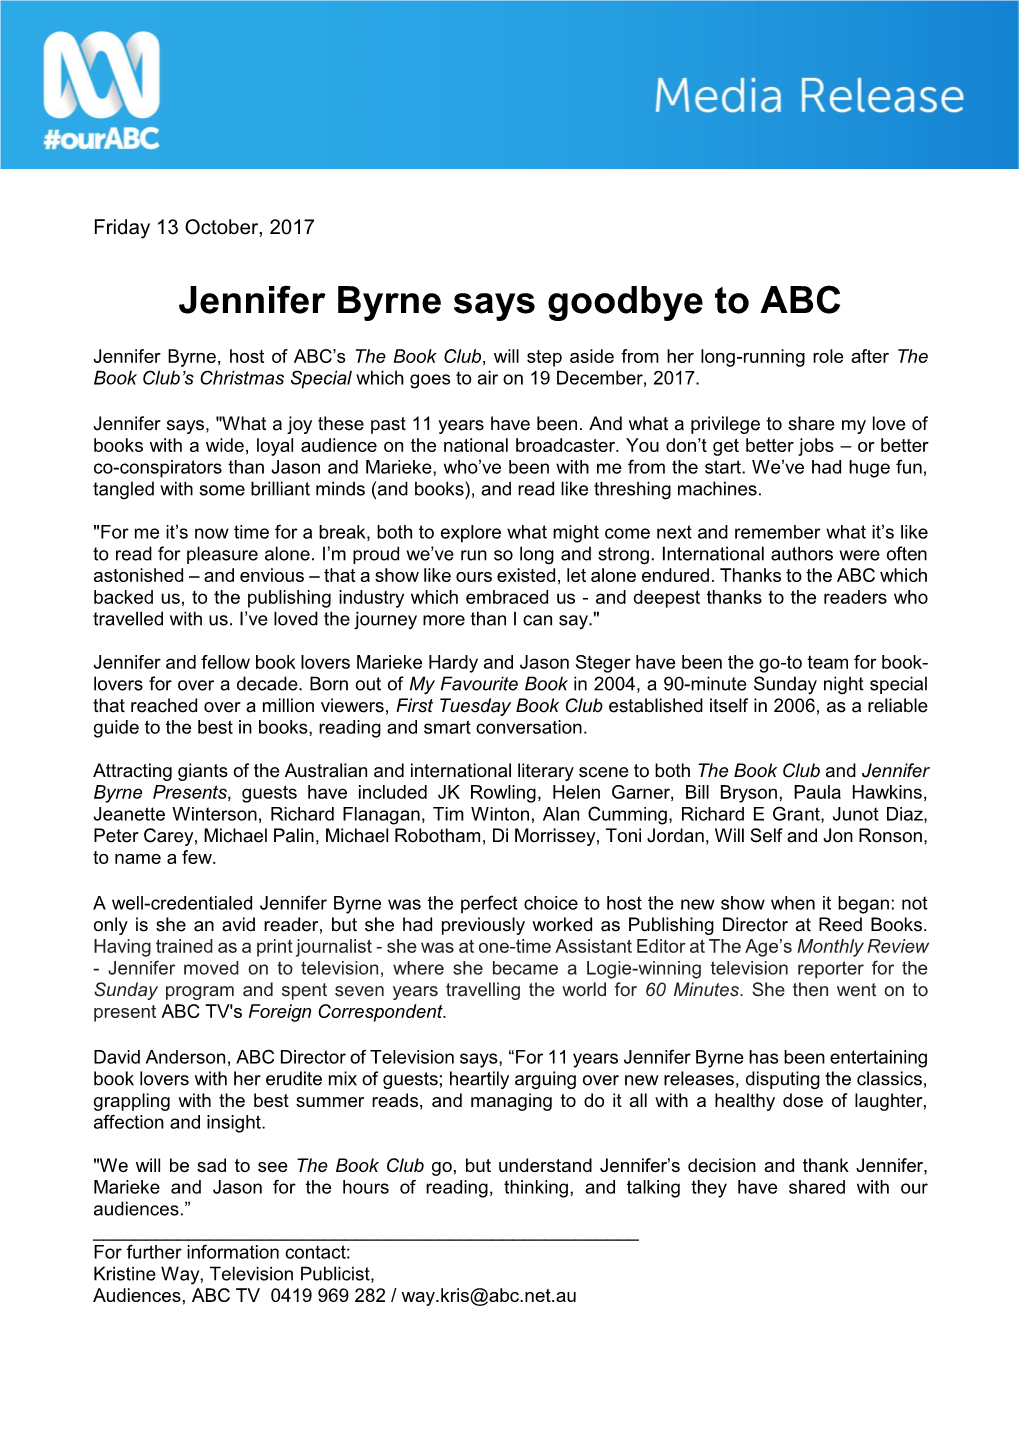 Jennifer Byrne Says Goodbye to ABC